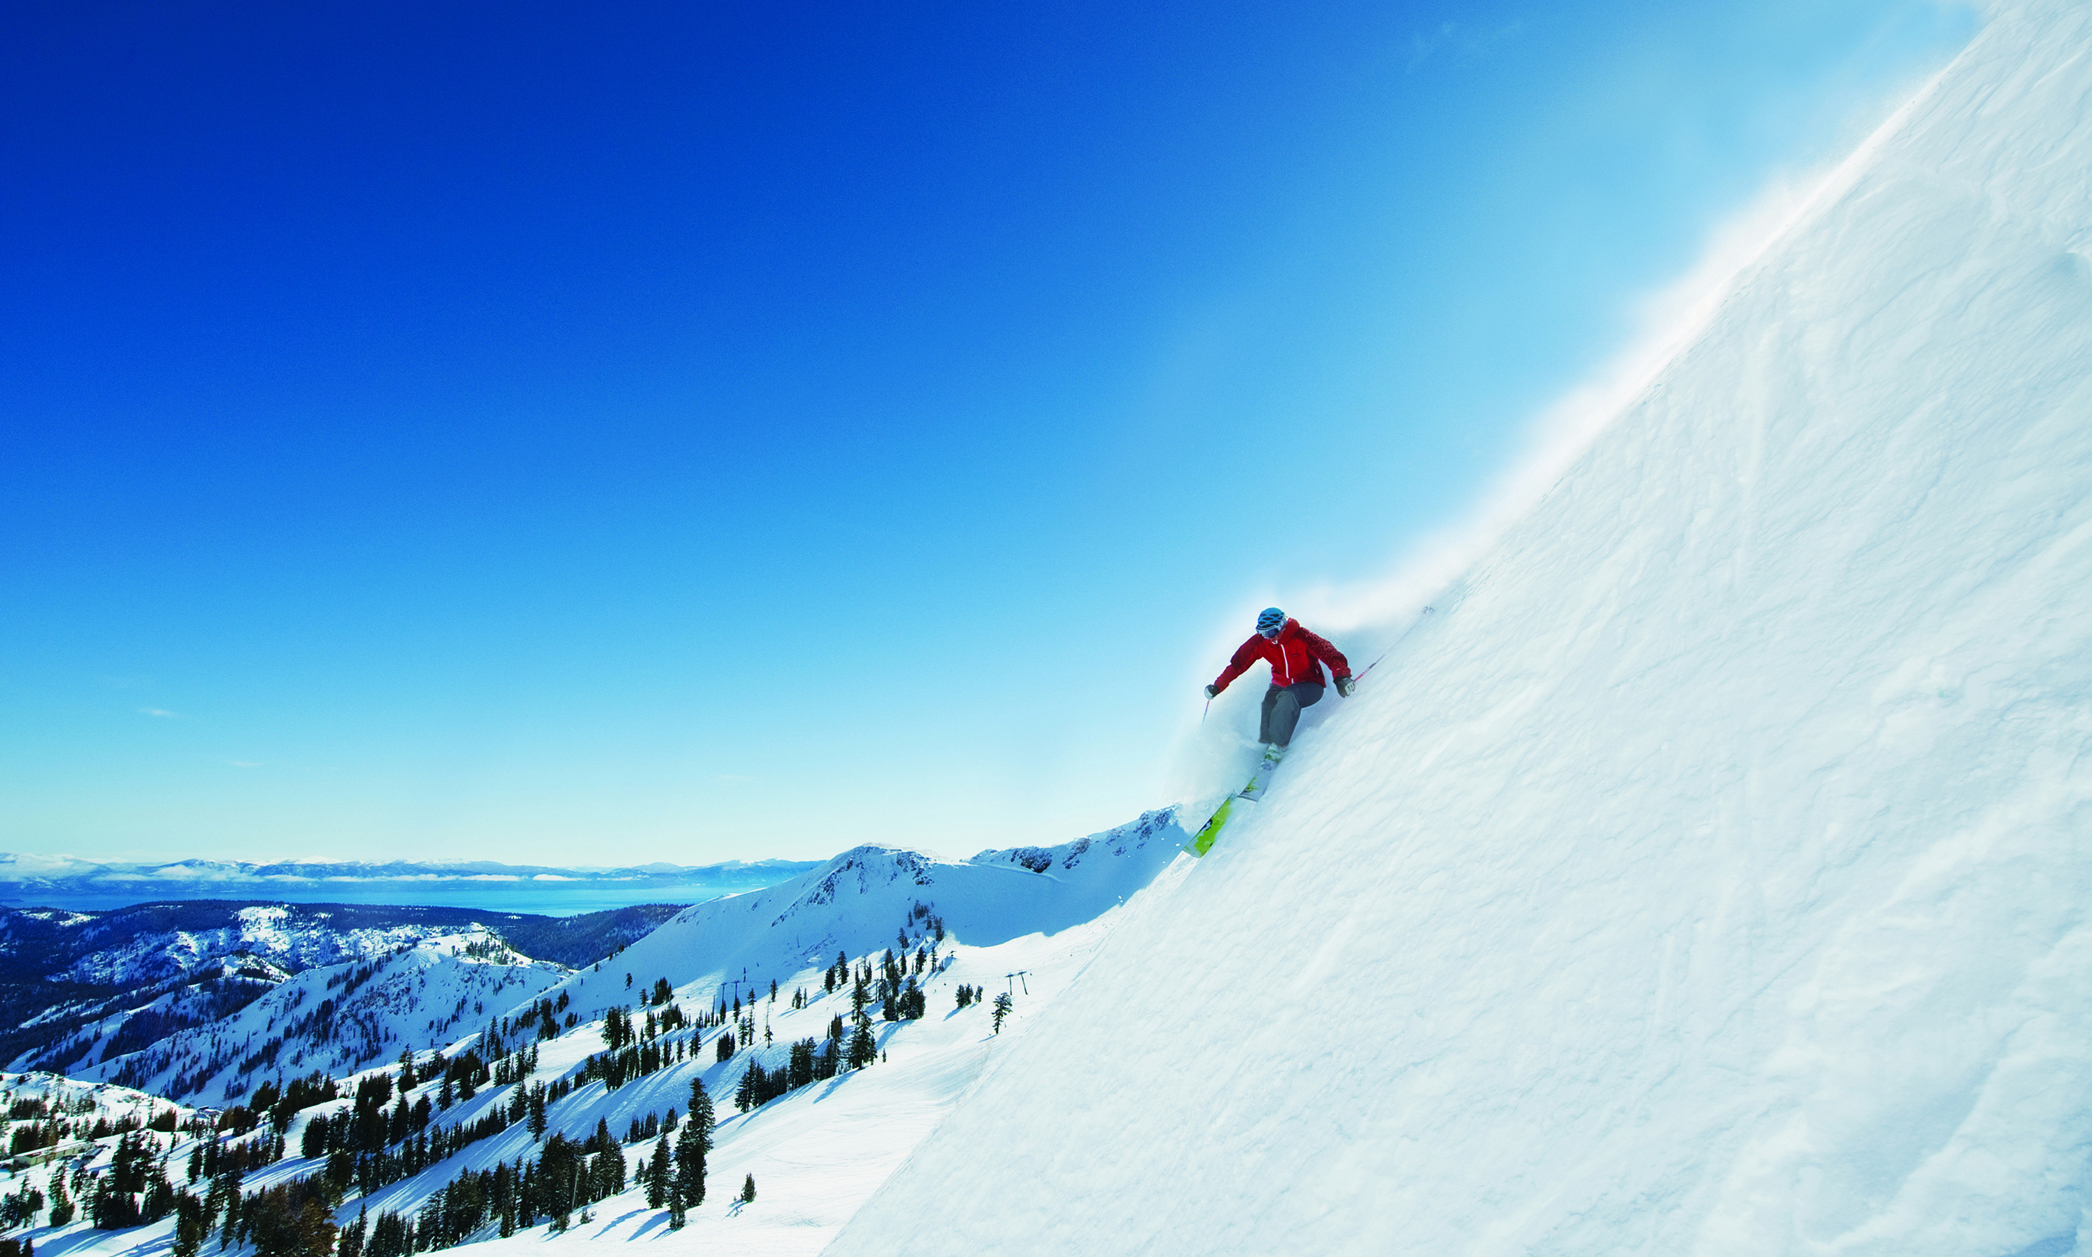 Lake Tahoe, in Sierra Nevada, kent 13 skigebieden, samen goed vele hectare skigebied voor elk niveau